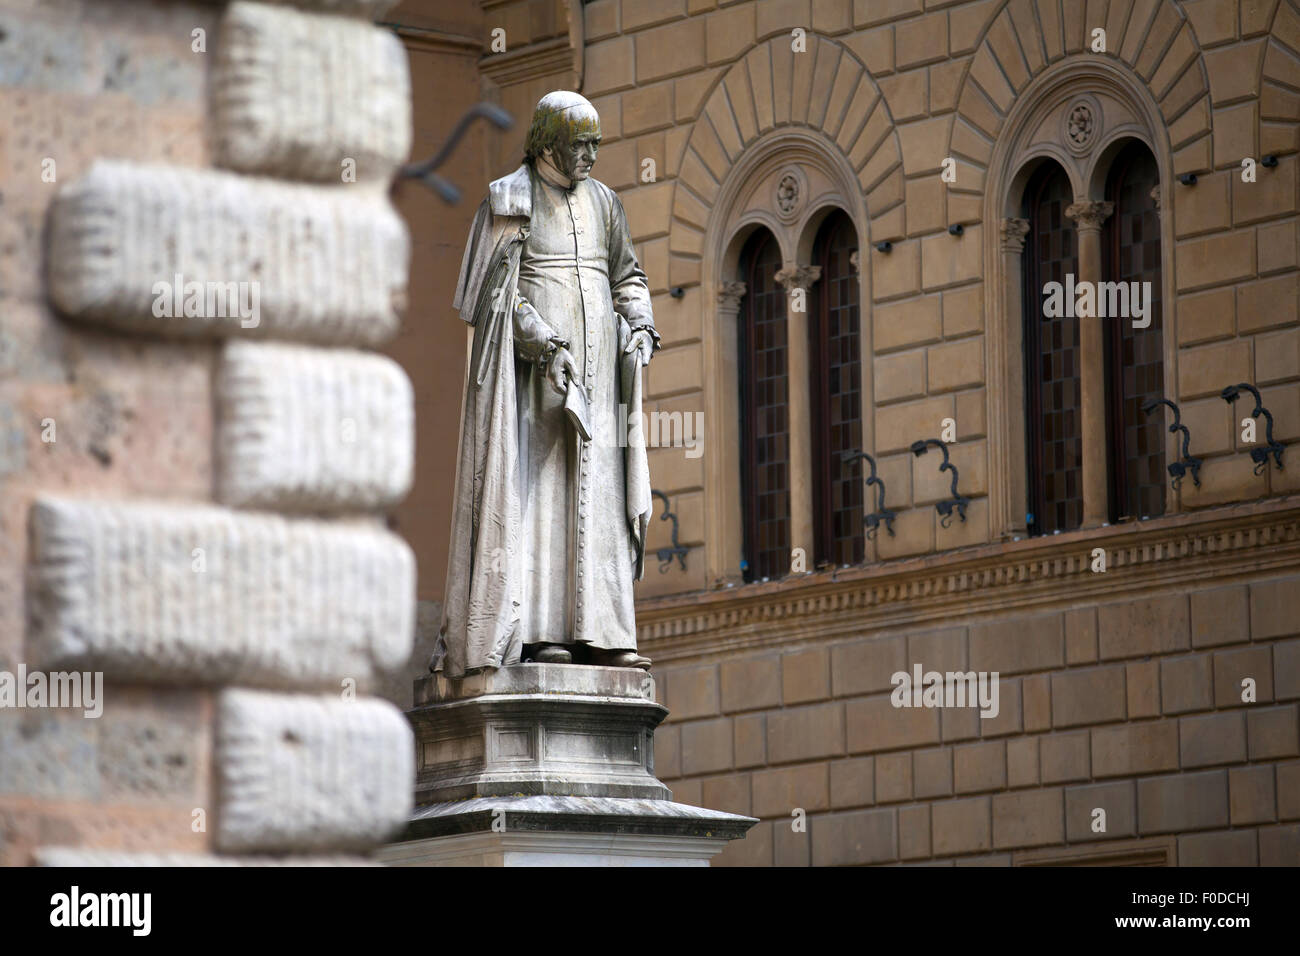 Sallustio Bandini Statue in Piazza Salimbeni. Siena, Tuscany Stock Photo